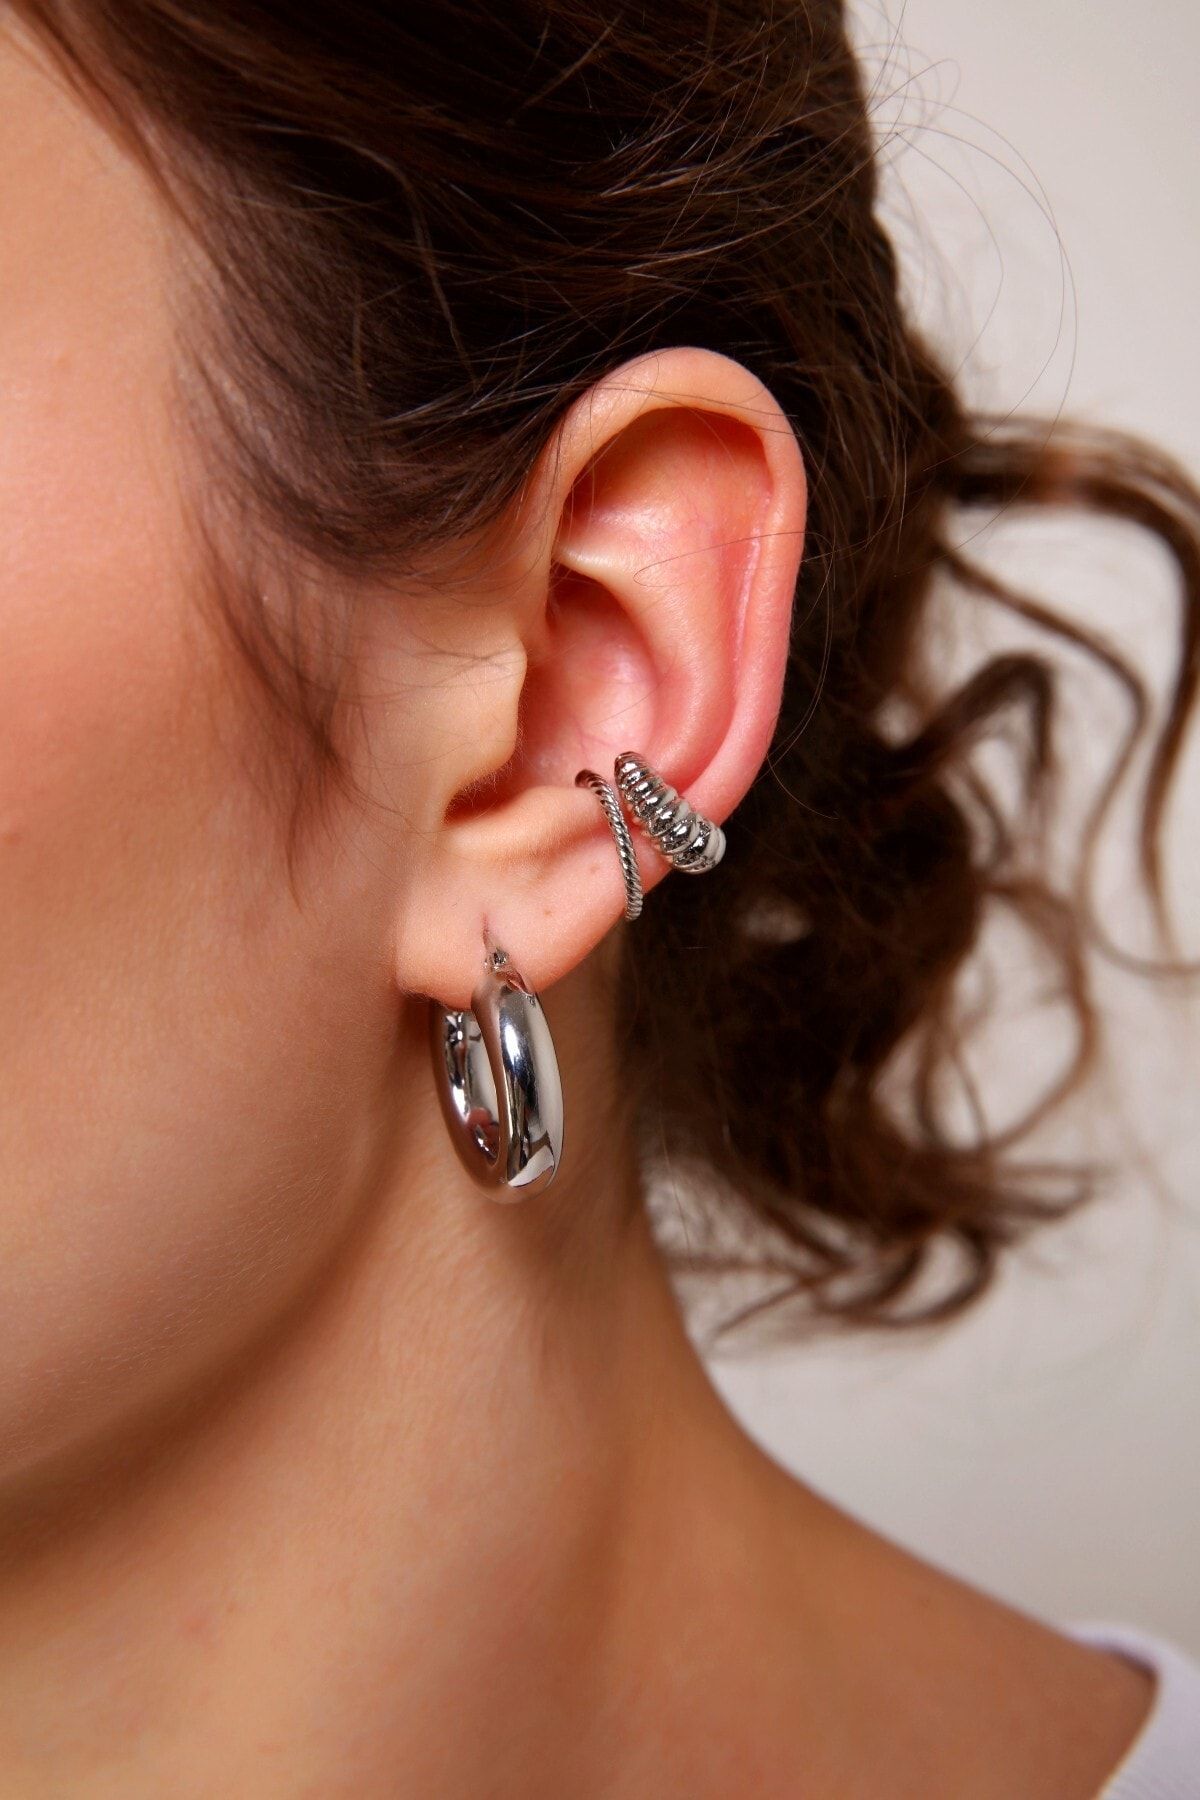 Buy 16g Helix Earring Cartilage Piercing 16g Helix Hoop Silver Diamond Cut Helix  Hoop Earring 16 Gauge Helix Jewelry Online in India - Etsy